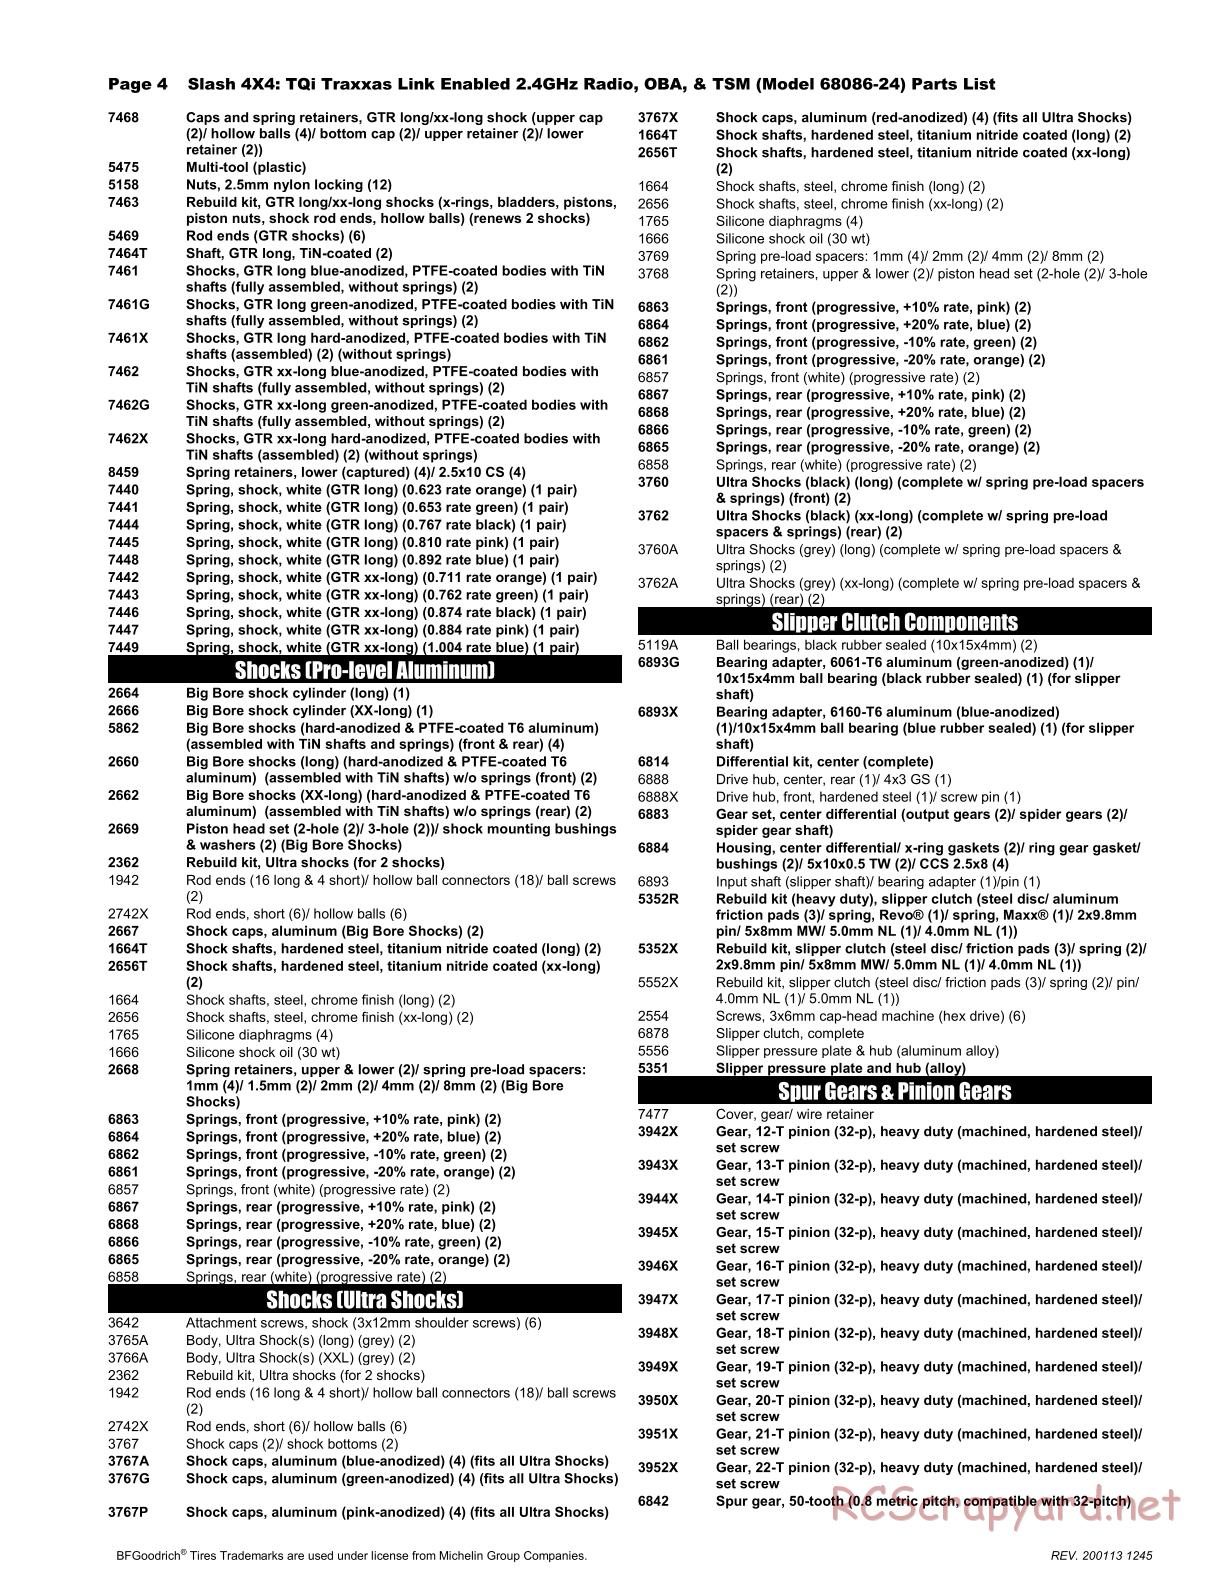 Traxxas - Slash 4x4 TSM OBA (2017) - Parts List - Page 4